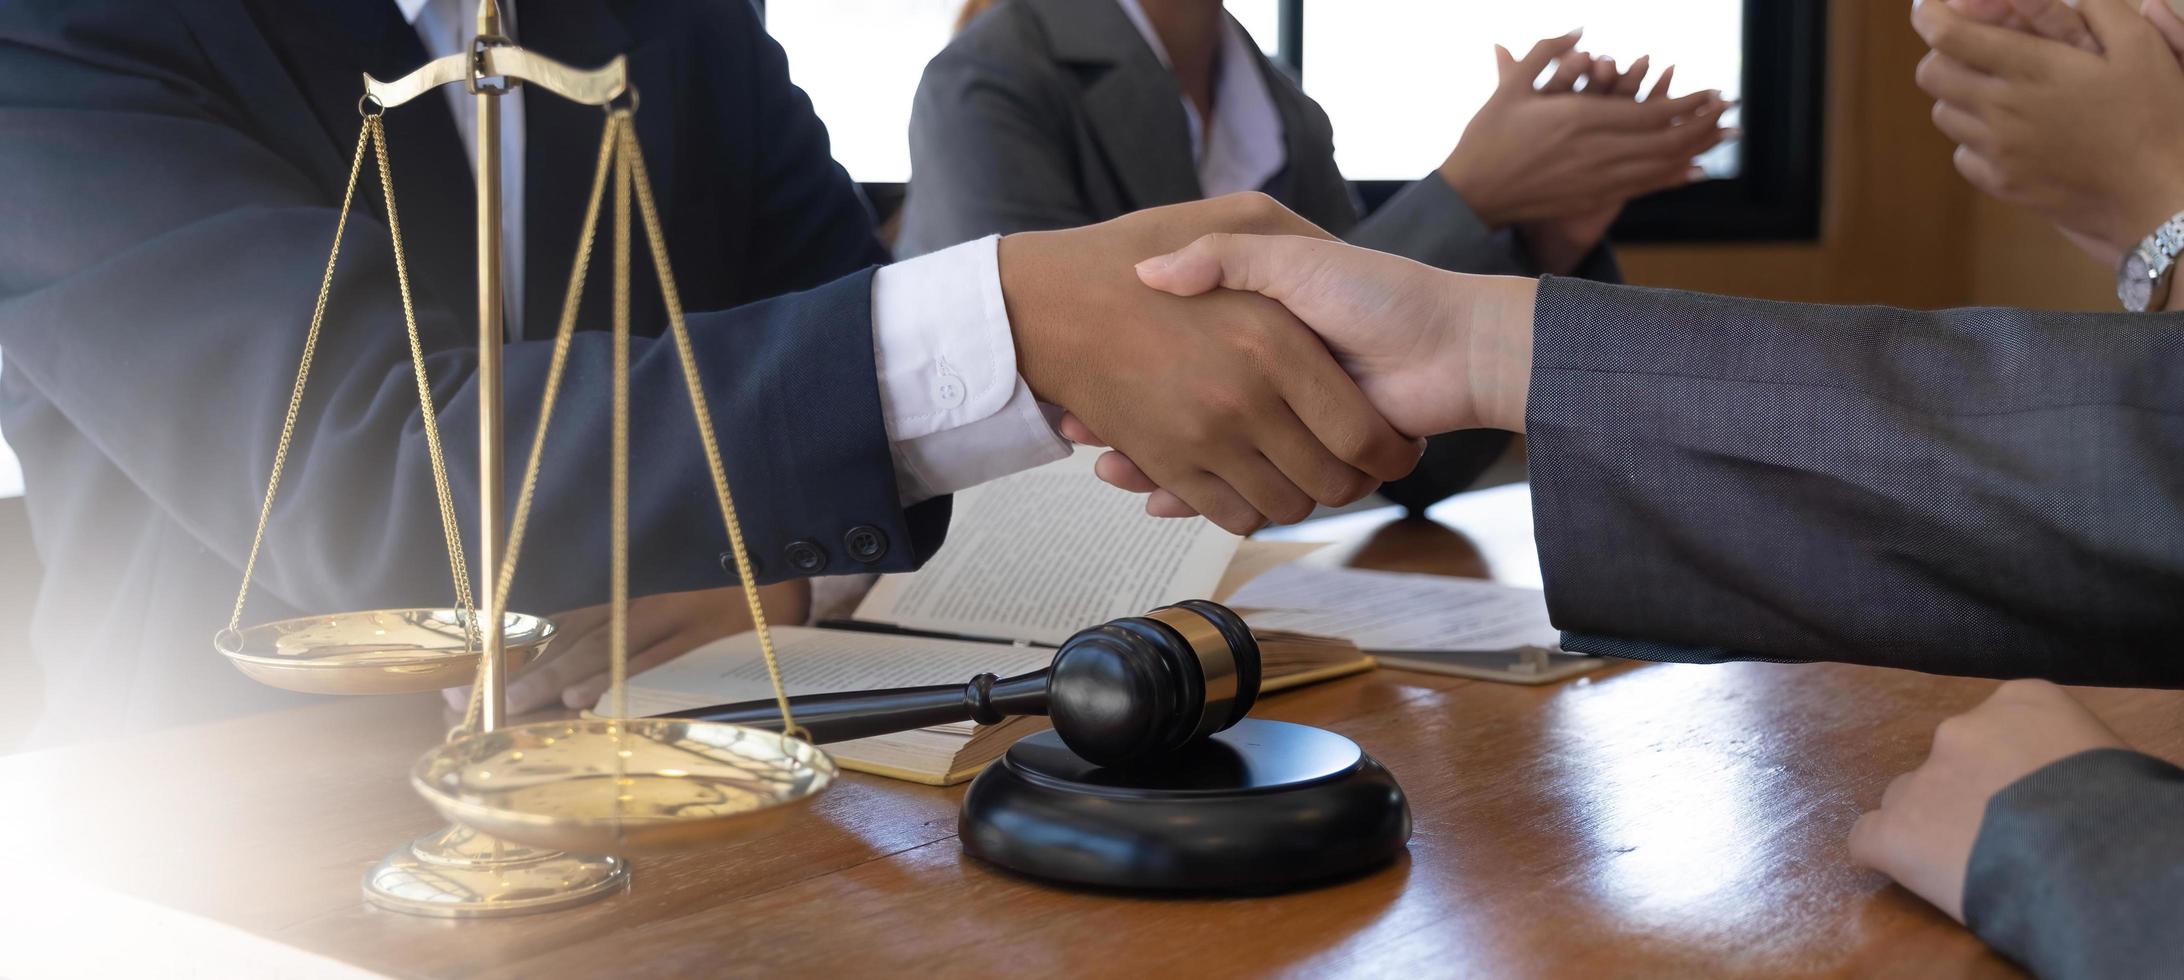 hombre de negocios dándose la mano para sellar un trato con sus socios abogados o abogados discutiendo un acuerdo de contrato. foto